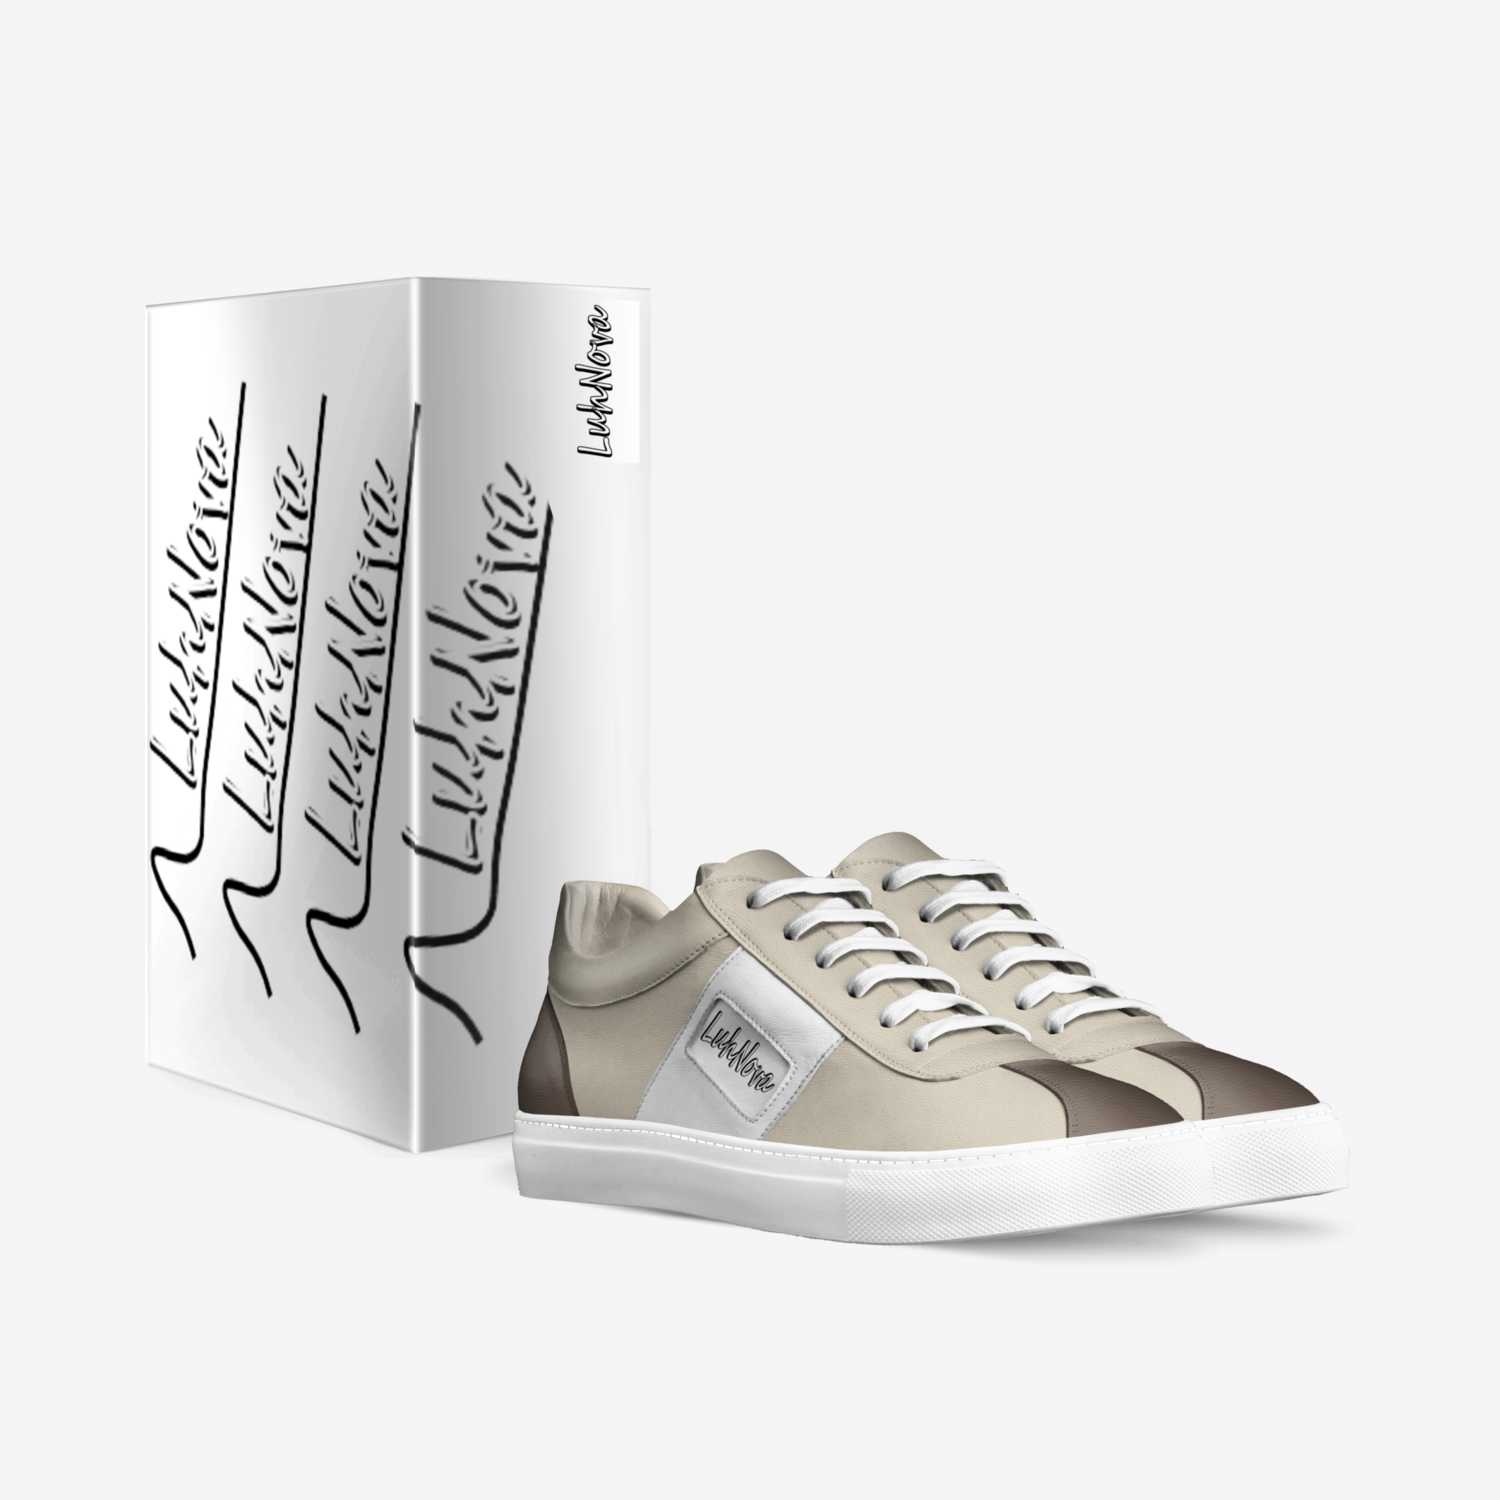 LuhNova custom made in Italy shoes by Frankie Manzanilla | Box view